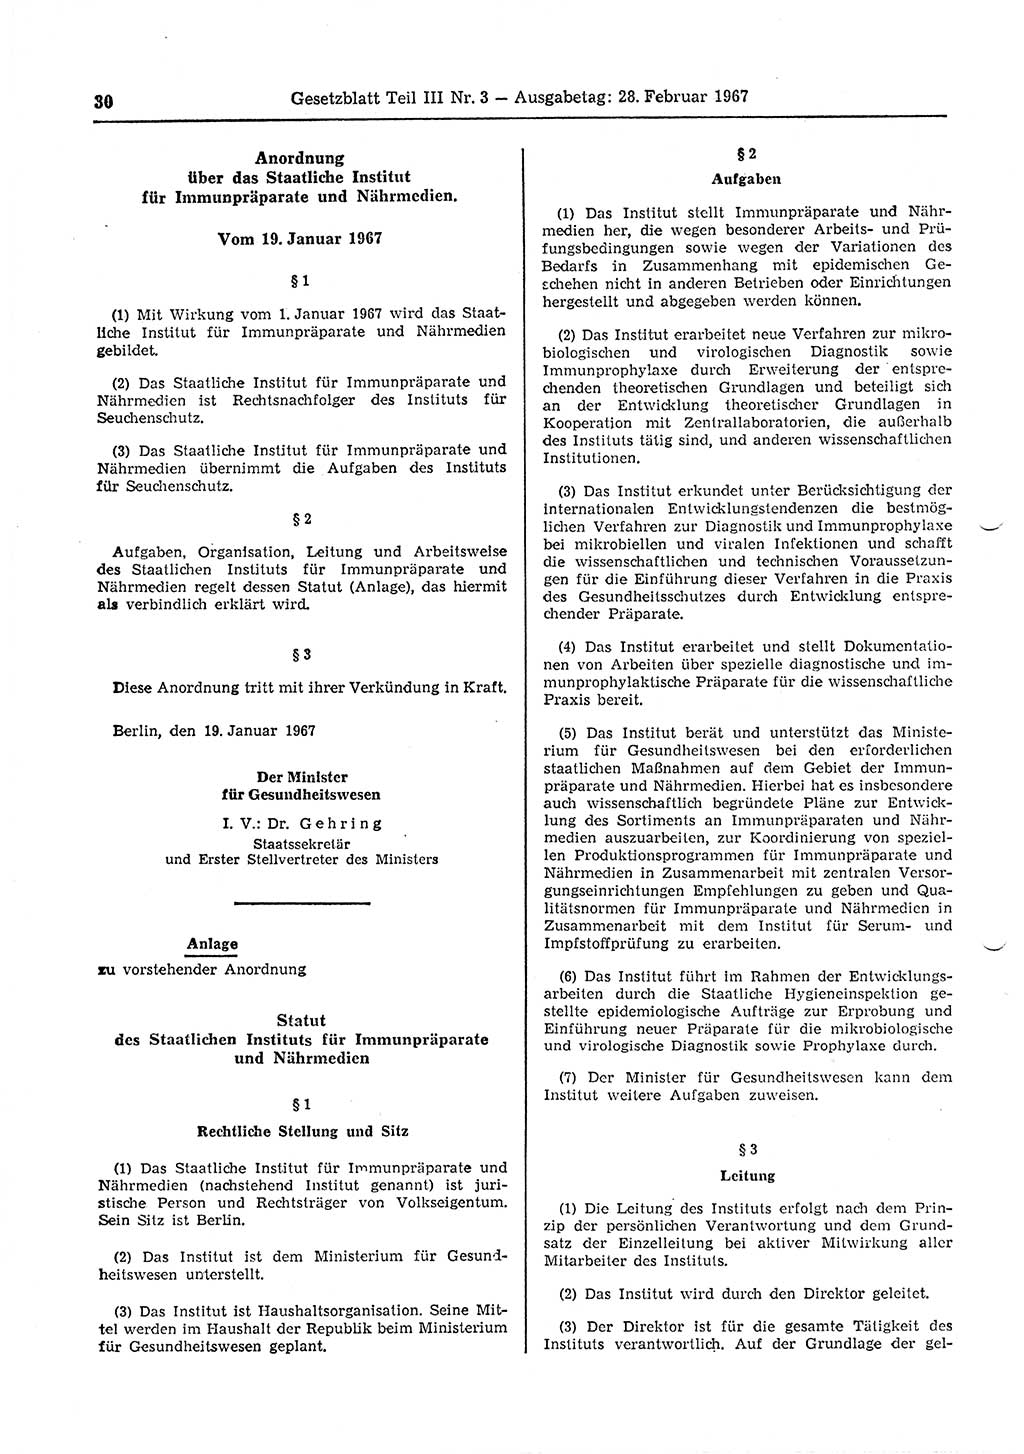 Gesetzblatt (GBl.) der Deutschen Demokratischen Republik (DDR) Teil ⅠⅠⅠ 1967, Seite 30 (GBl. DDR ⅠⅠⅠ 1967, S. 30)